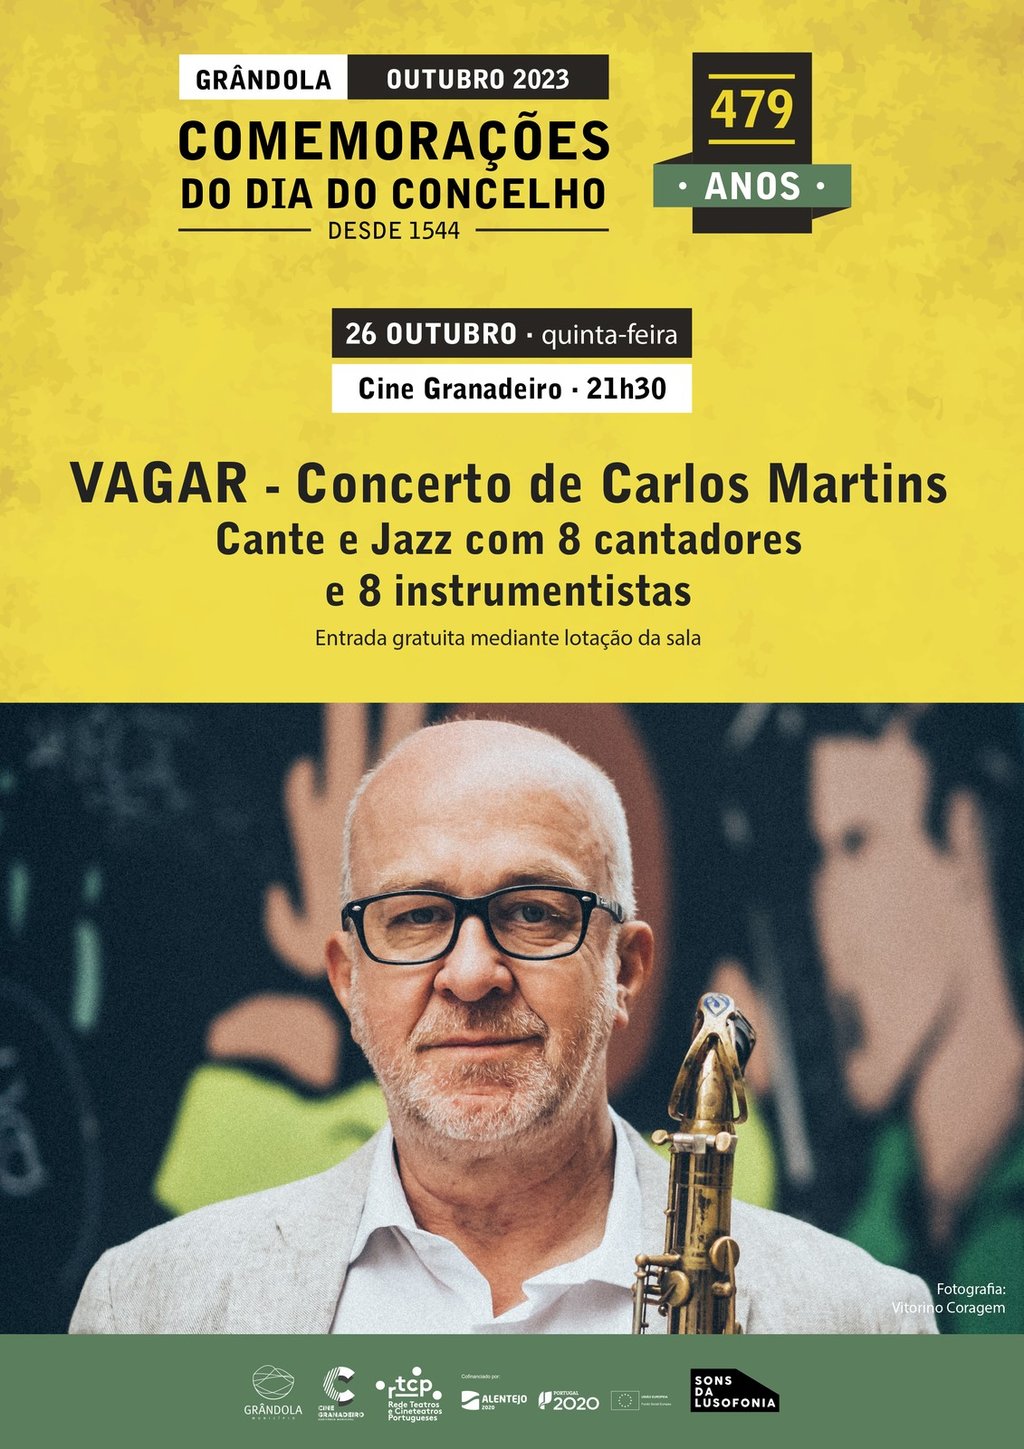 VAGAR - Concerto de Carlos Martins | Cante e Jazz com 8 cantadores e 8 instrumentistas